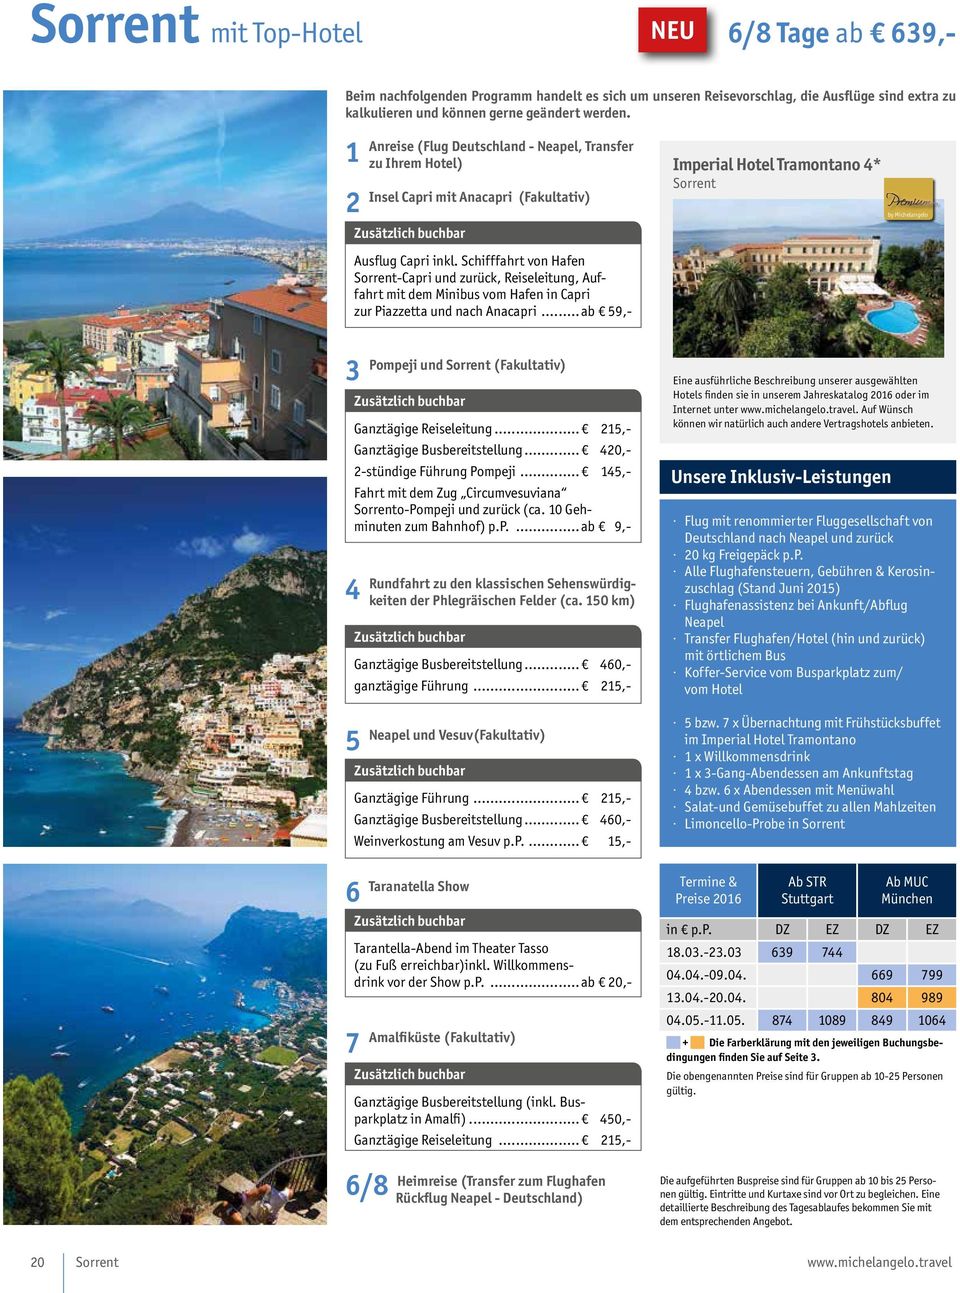 Schifffahrt von Hafen Sorrent-Capri und zurück, Reiseleitung, Auffahrt mit dem Minibus vom Hafen in Capri zur Piazzetta und nach Anacapri.